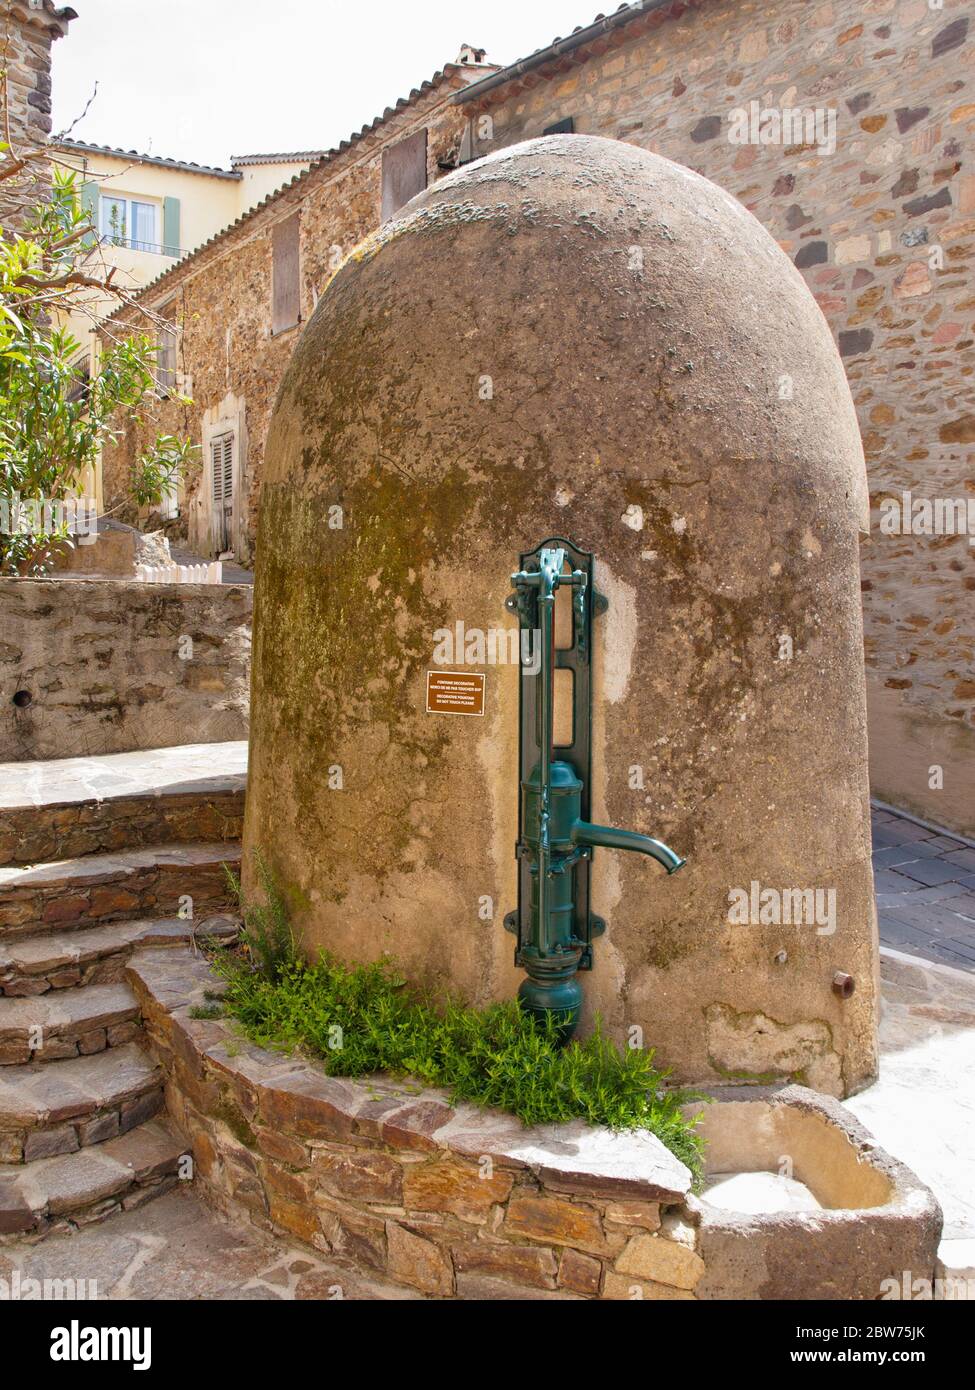 Pompe à eau manuelle dans le village de Gassin, Côte d'Azur, Provence, sud de la France Banque D'Images